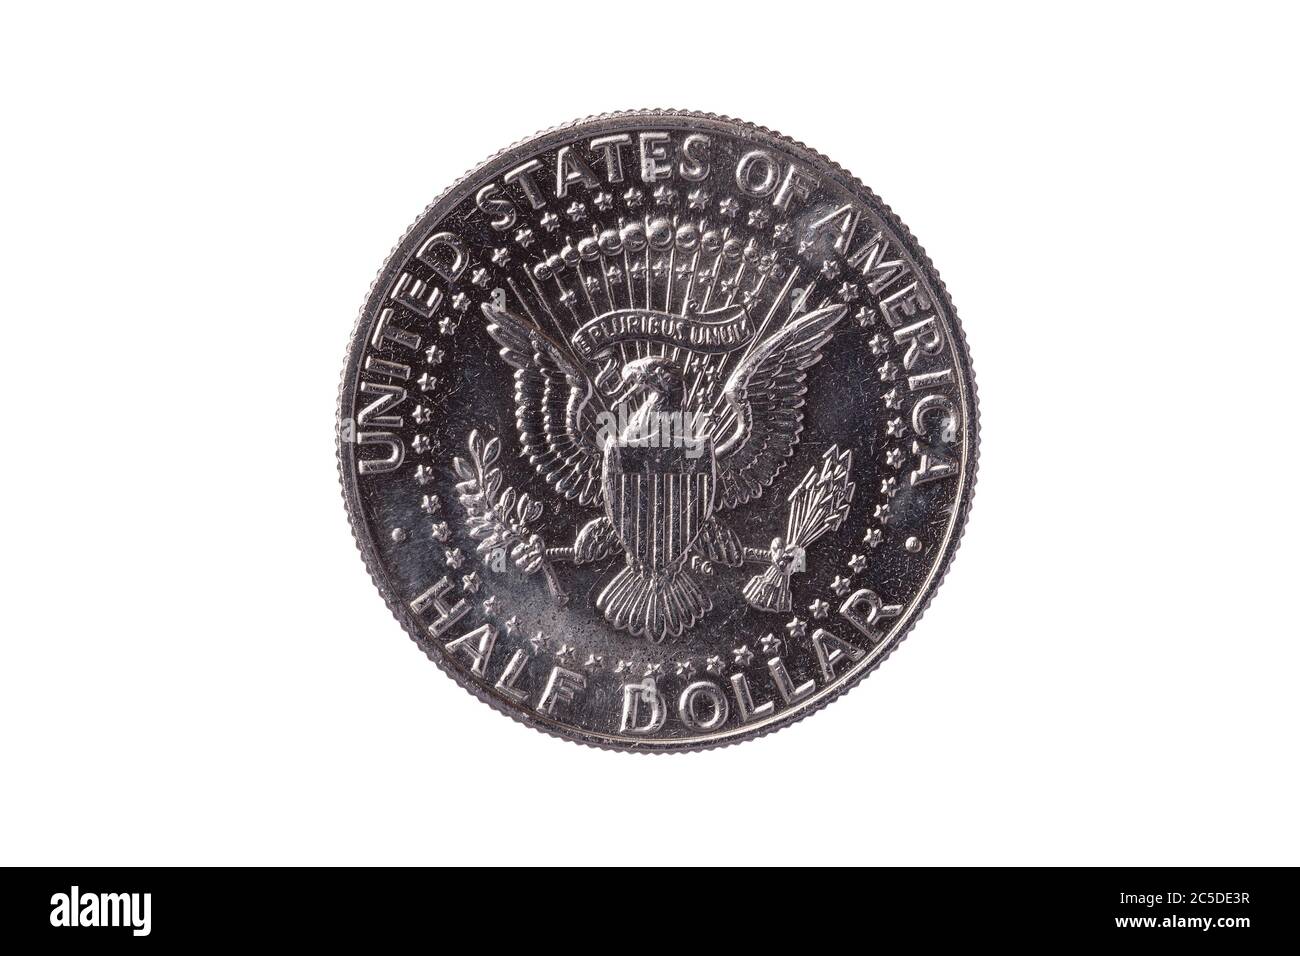 USA Half Dollar Nickel Münze (50 Cent) datiert 1989 mit einem Bild von Weißadler ausgeschnitten und isoliert auf einem weißen Hintergrund Stockfoto